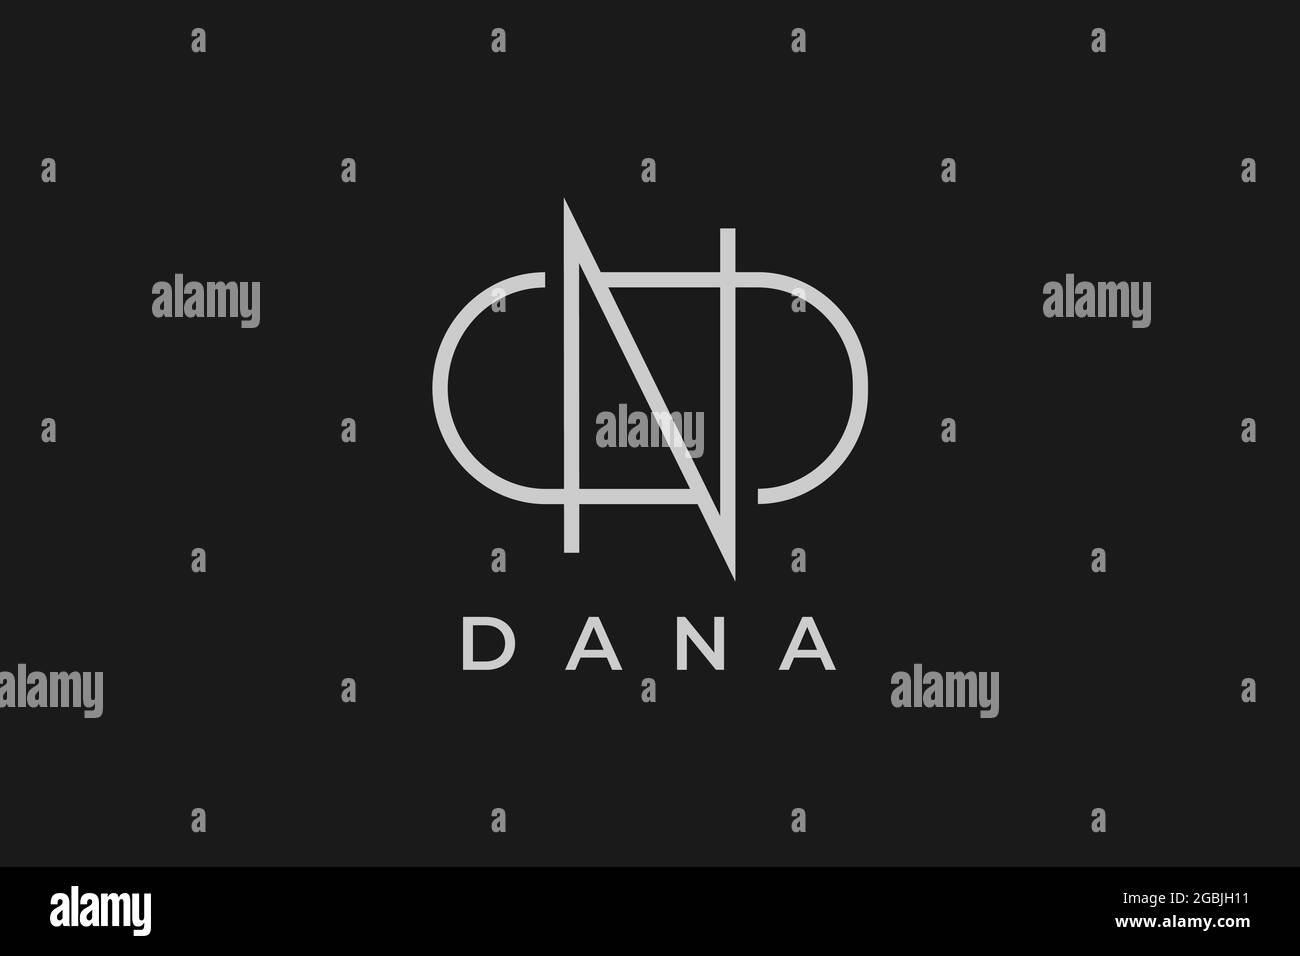 logo name Dana, usable logo design for private logo, business name card web icon, social media icon Stock Vector